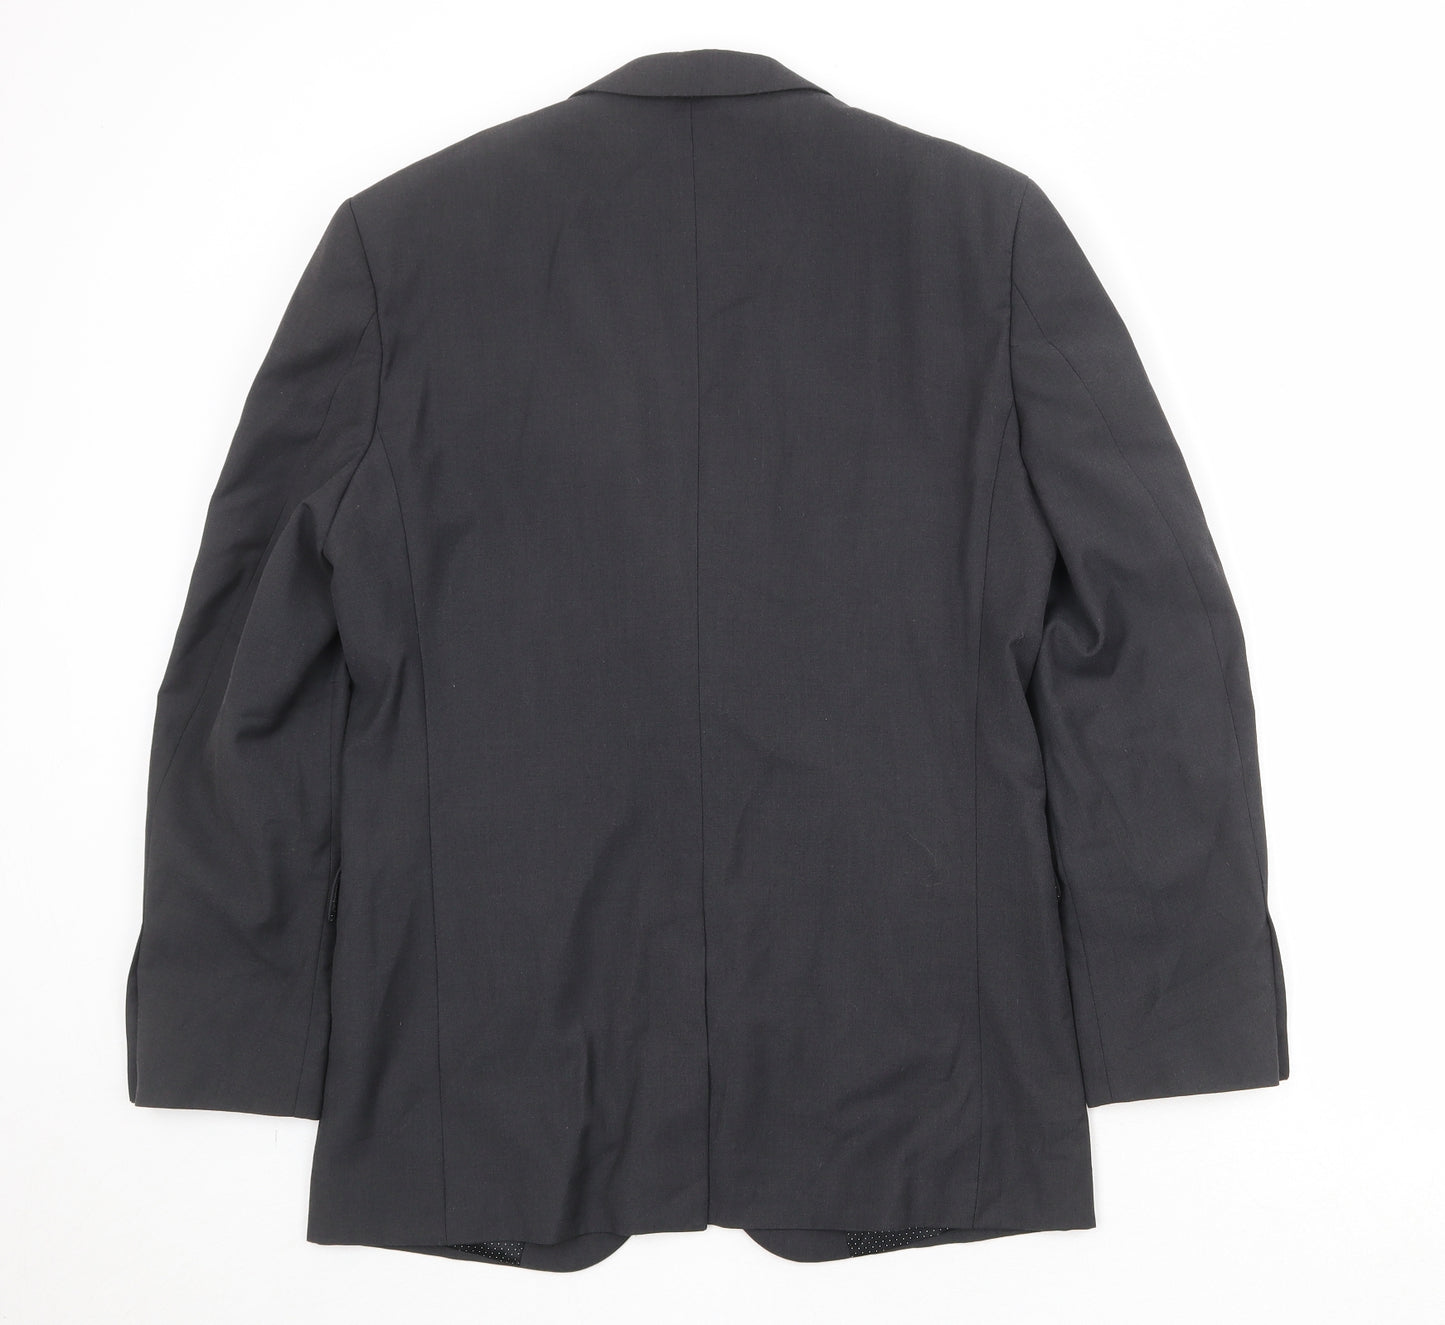 Skopes Mens Black Polyester Jacket Suit Jacket Size 36 Regular